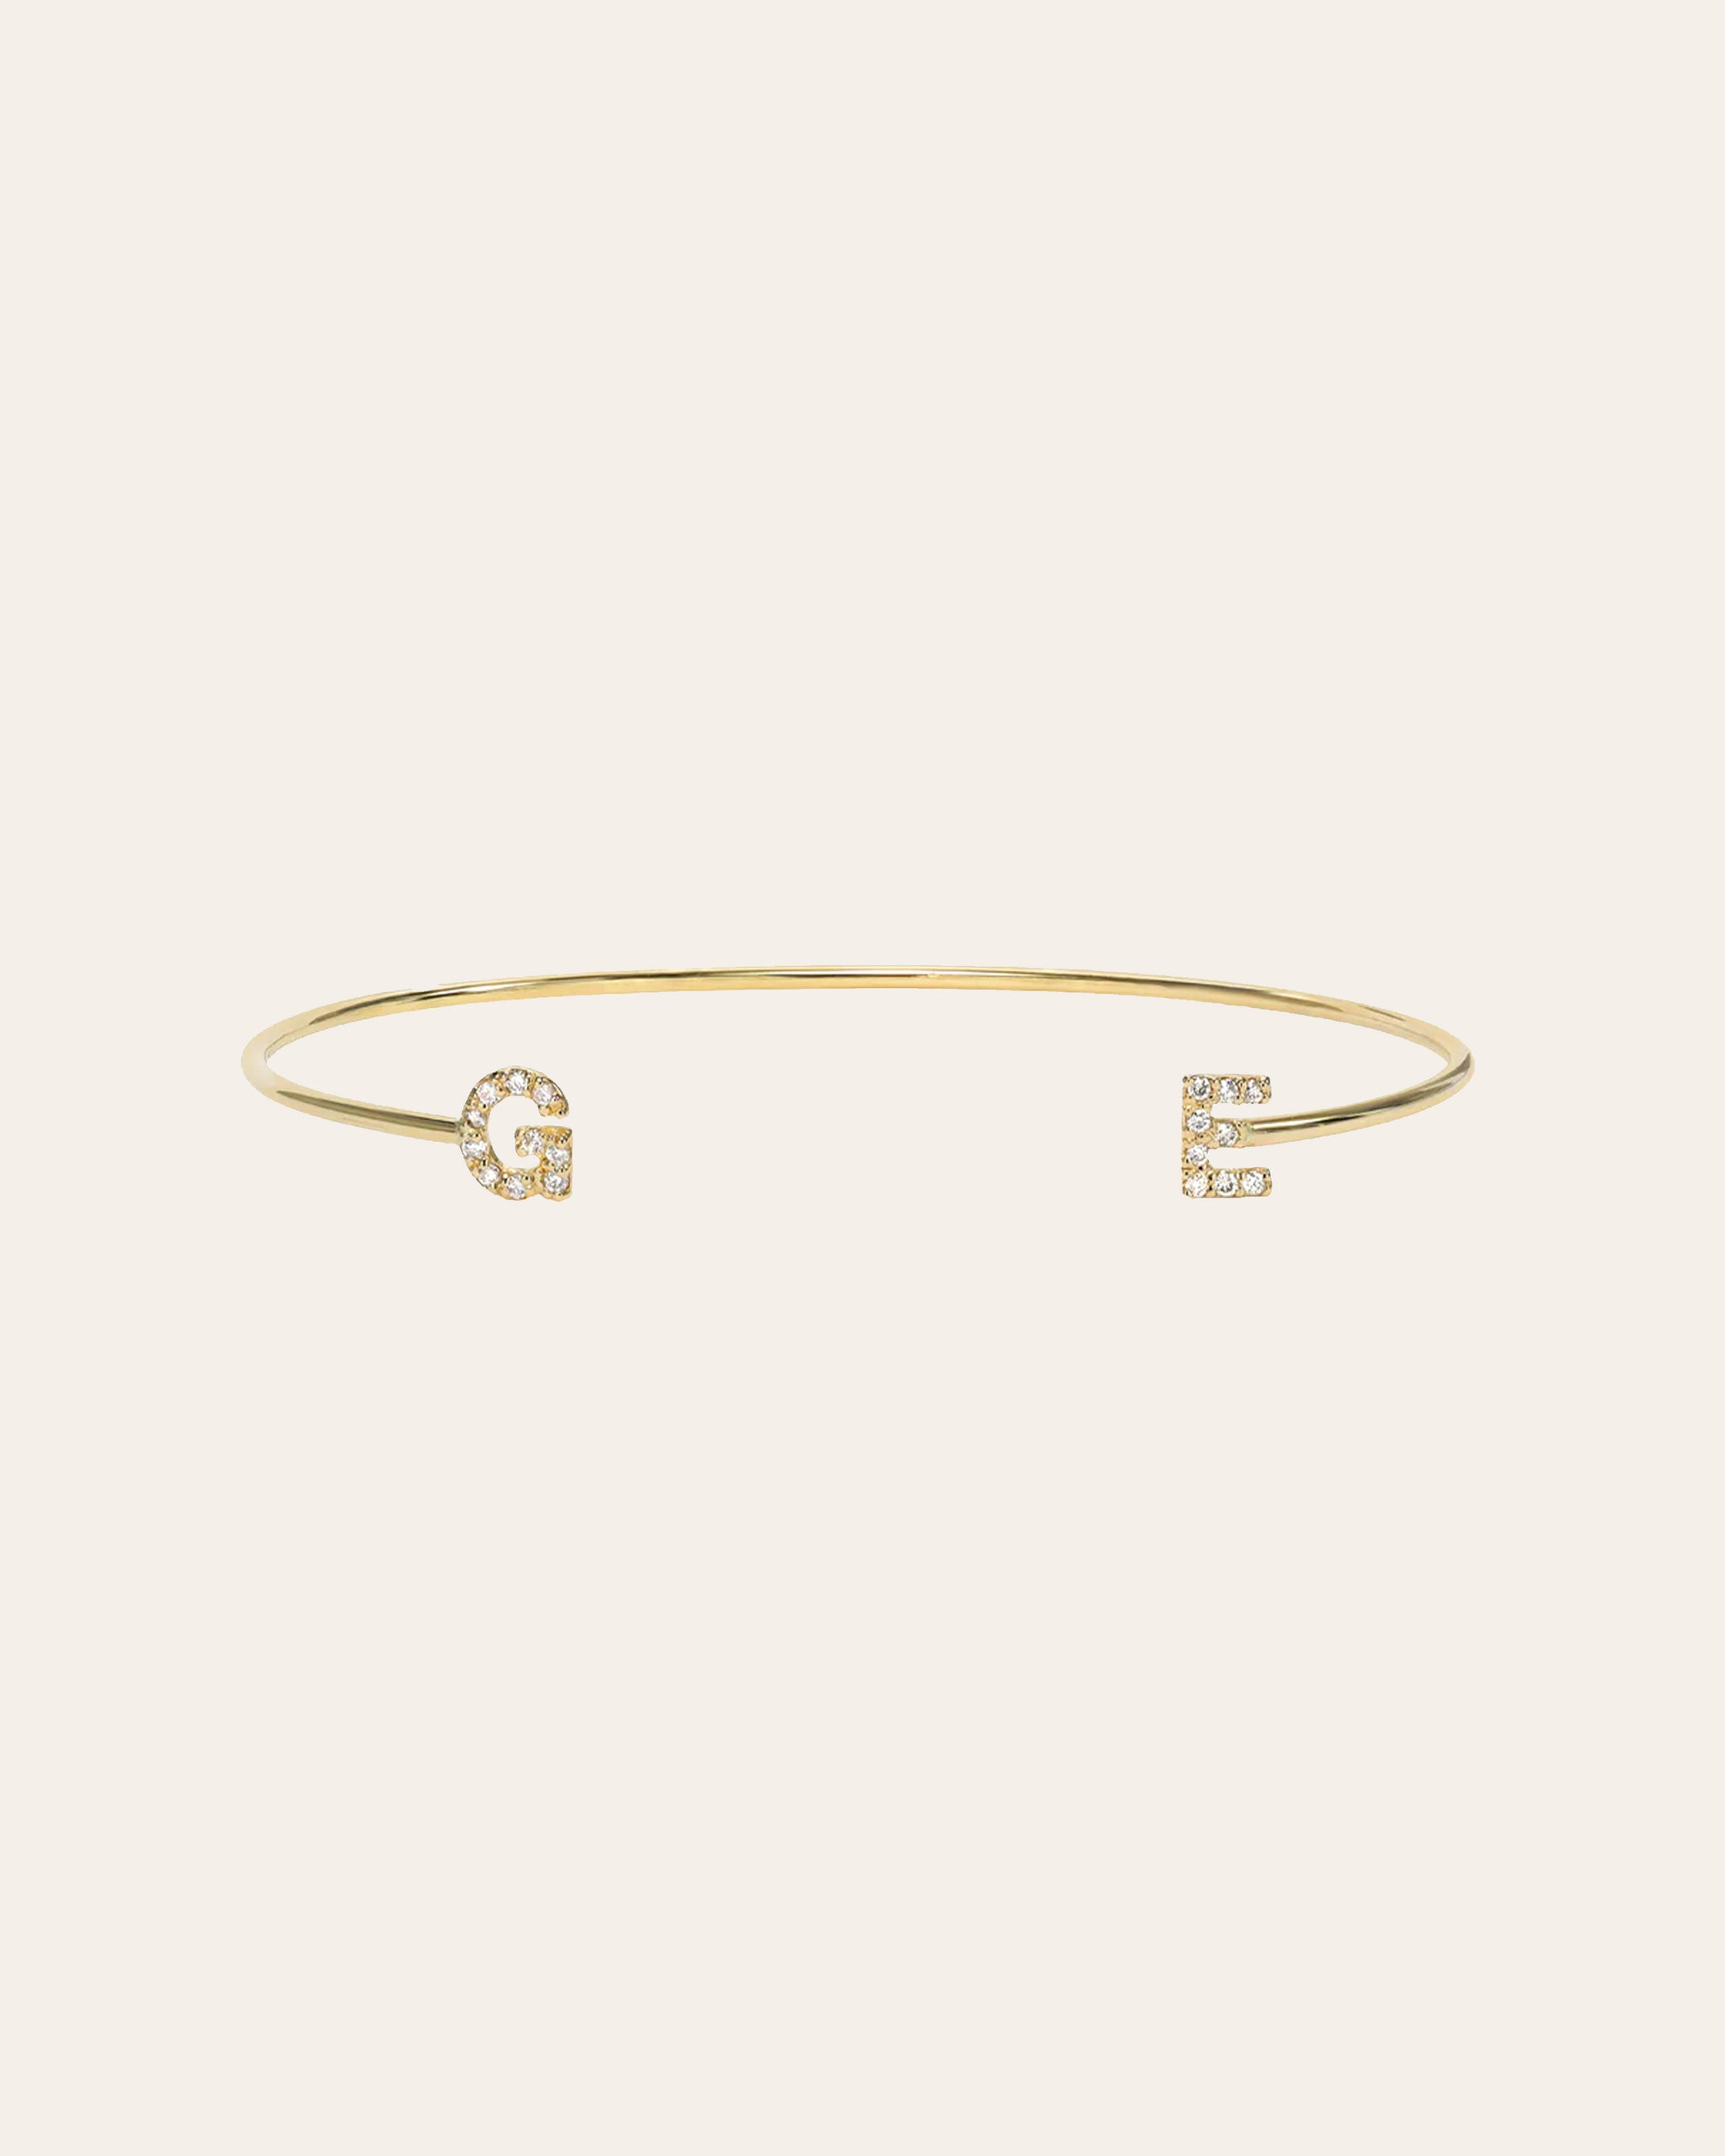 Zoe Lev Jewelry - Diamond Initials Cuff Bracelet